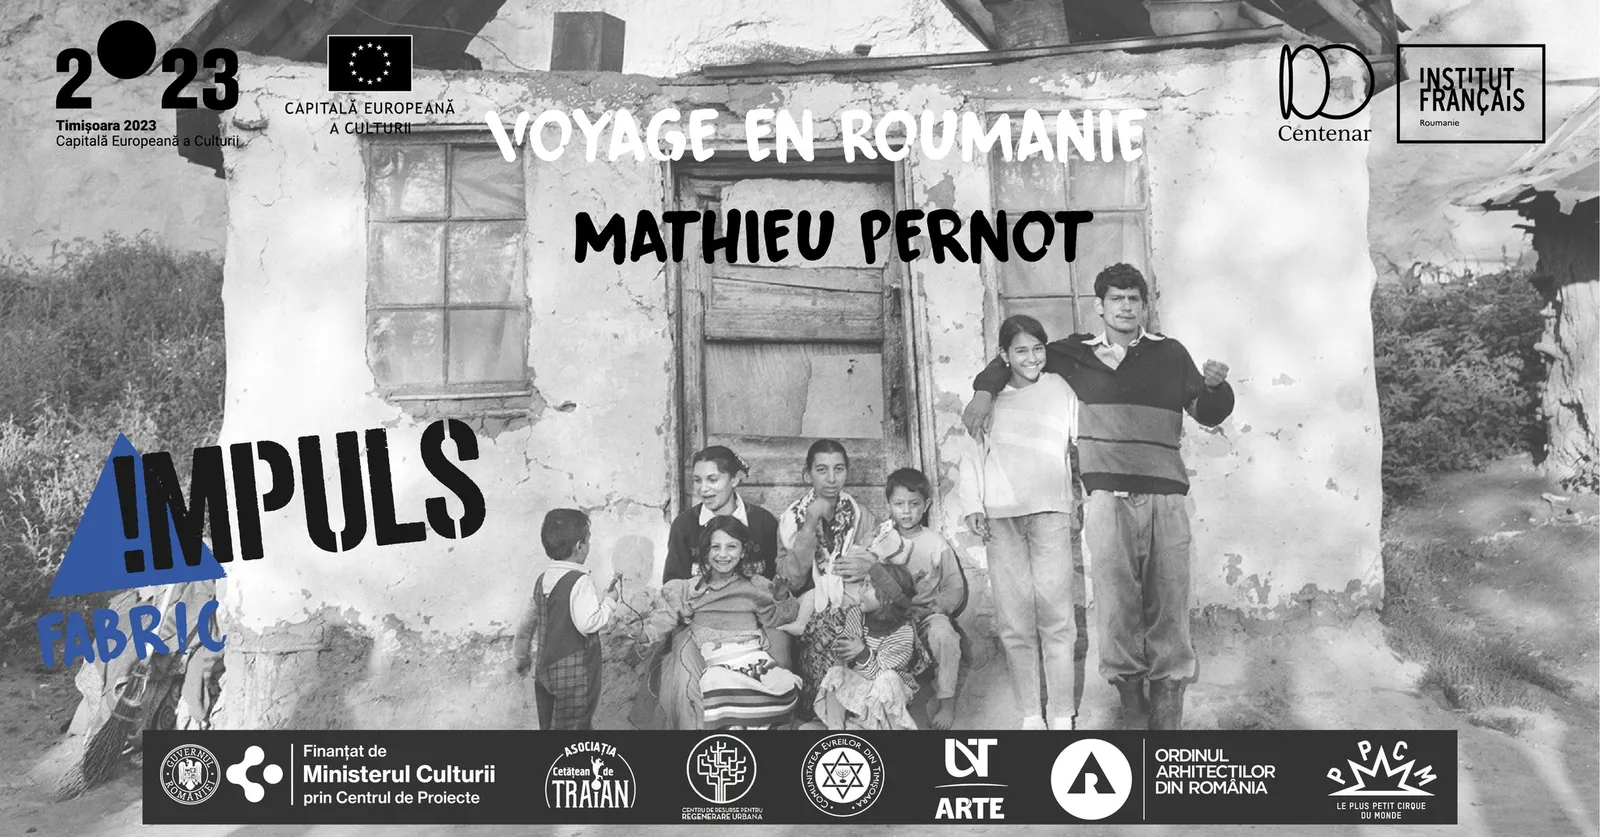 Vernisaj expoziție de fotografie „Voyage en Roumanie” - Mathieu Pernot